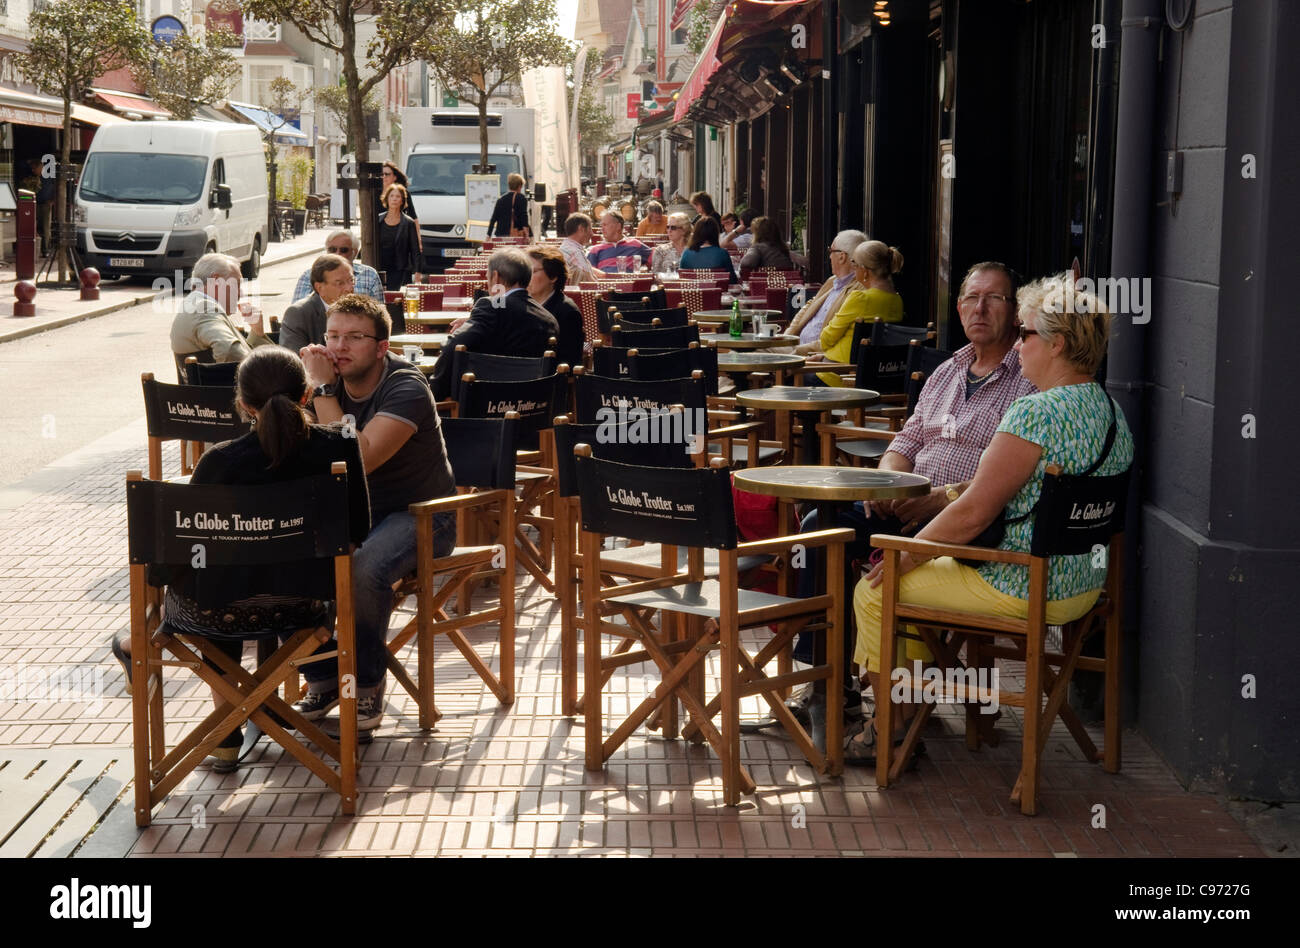 Les gens assis se détendre boire et manger dans un café de la rue chaussée français extérieur à Le touquet France Banque D'Images